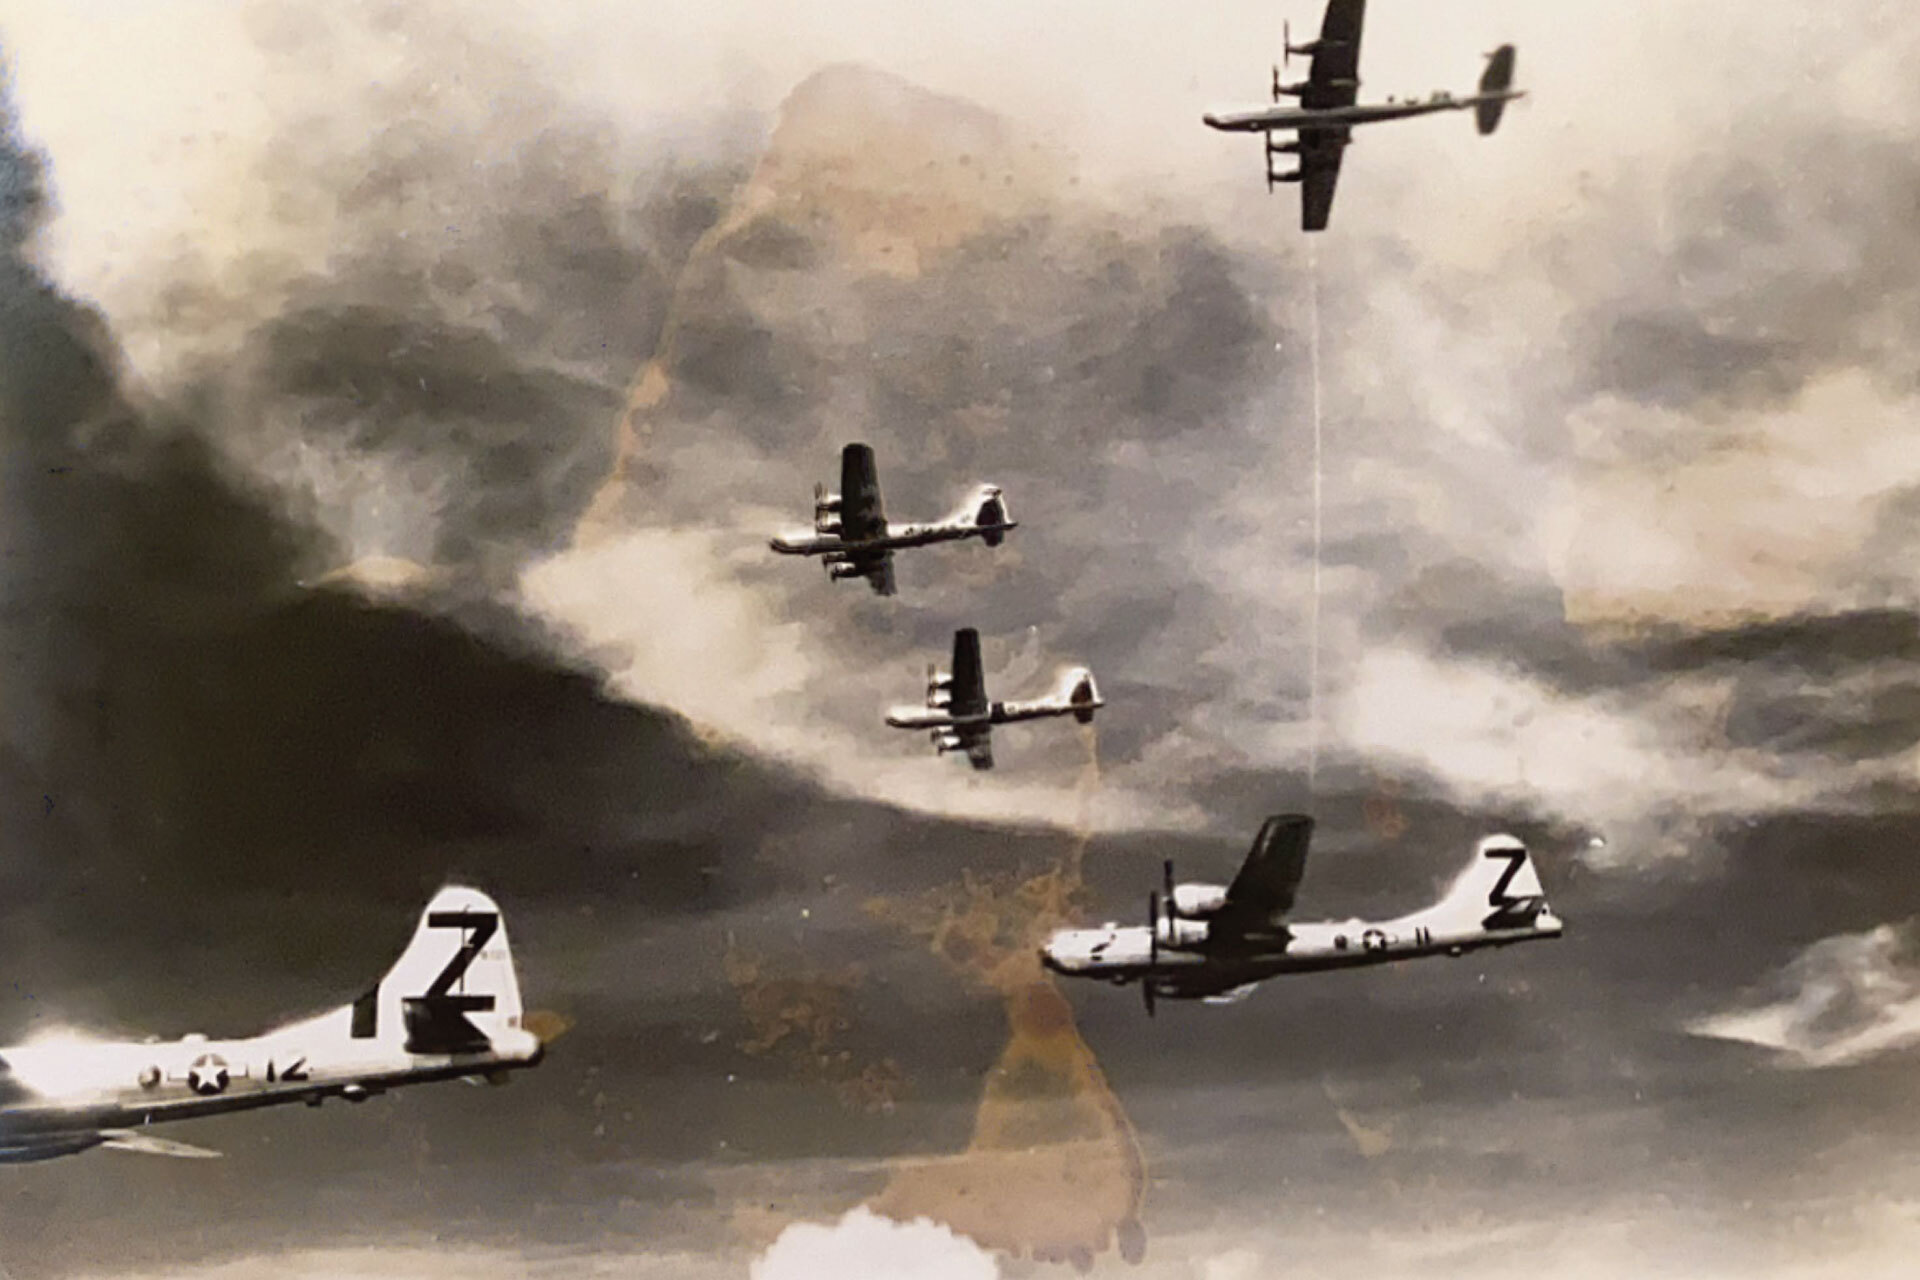 画质不佳的扫描照片显示的是二战飞机在飞行